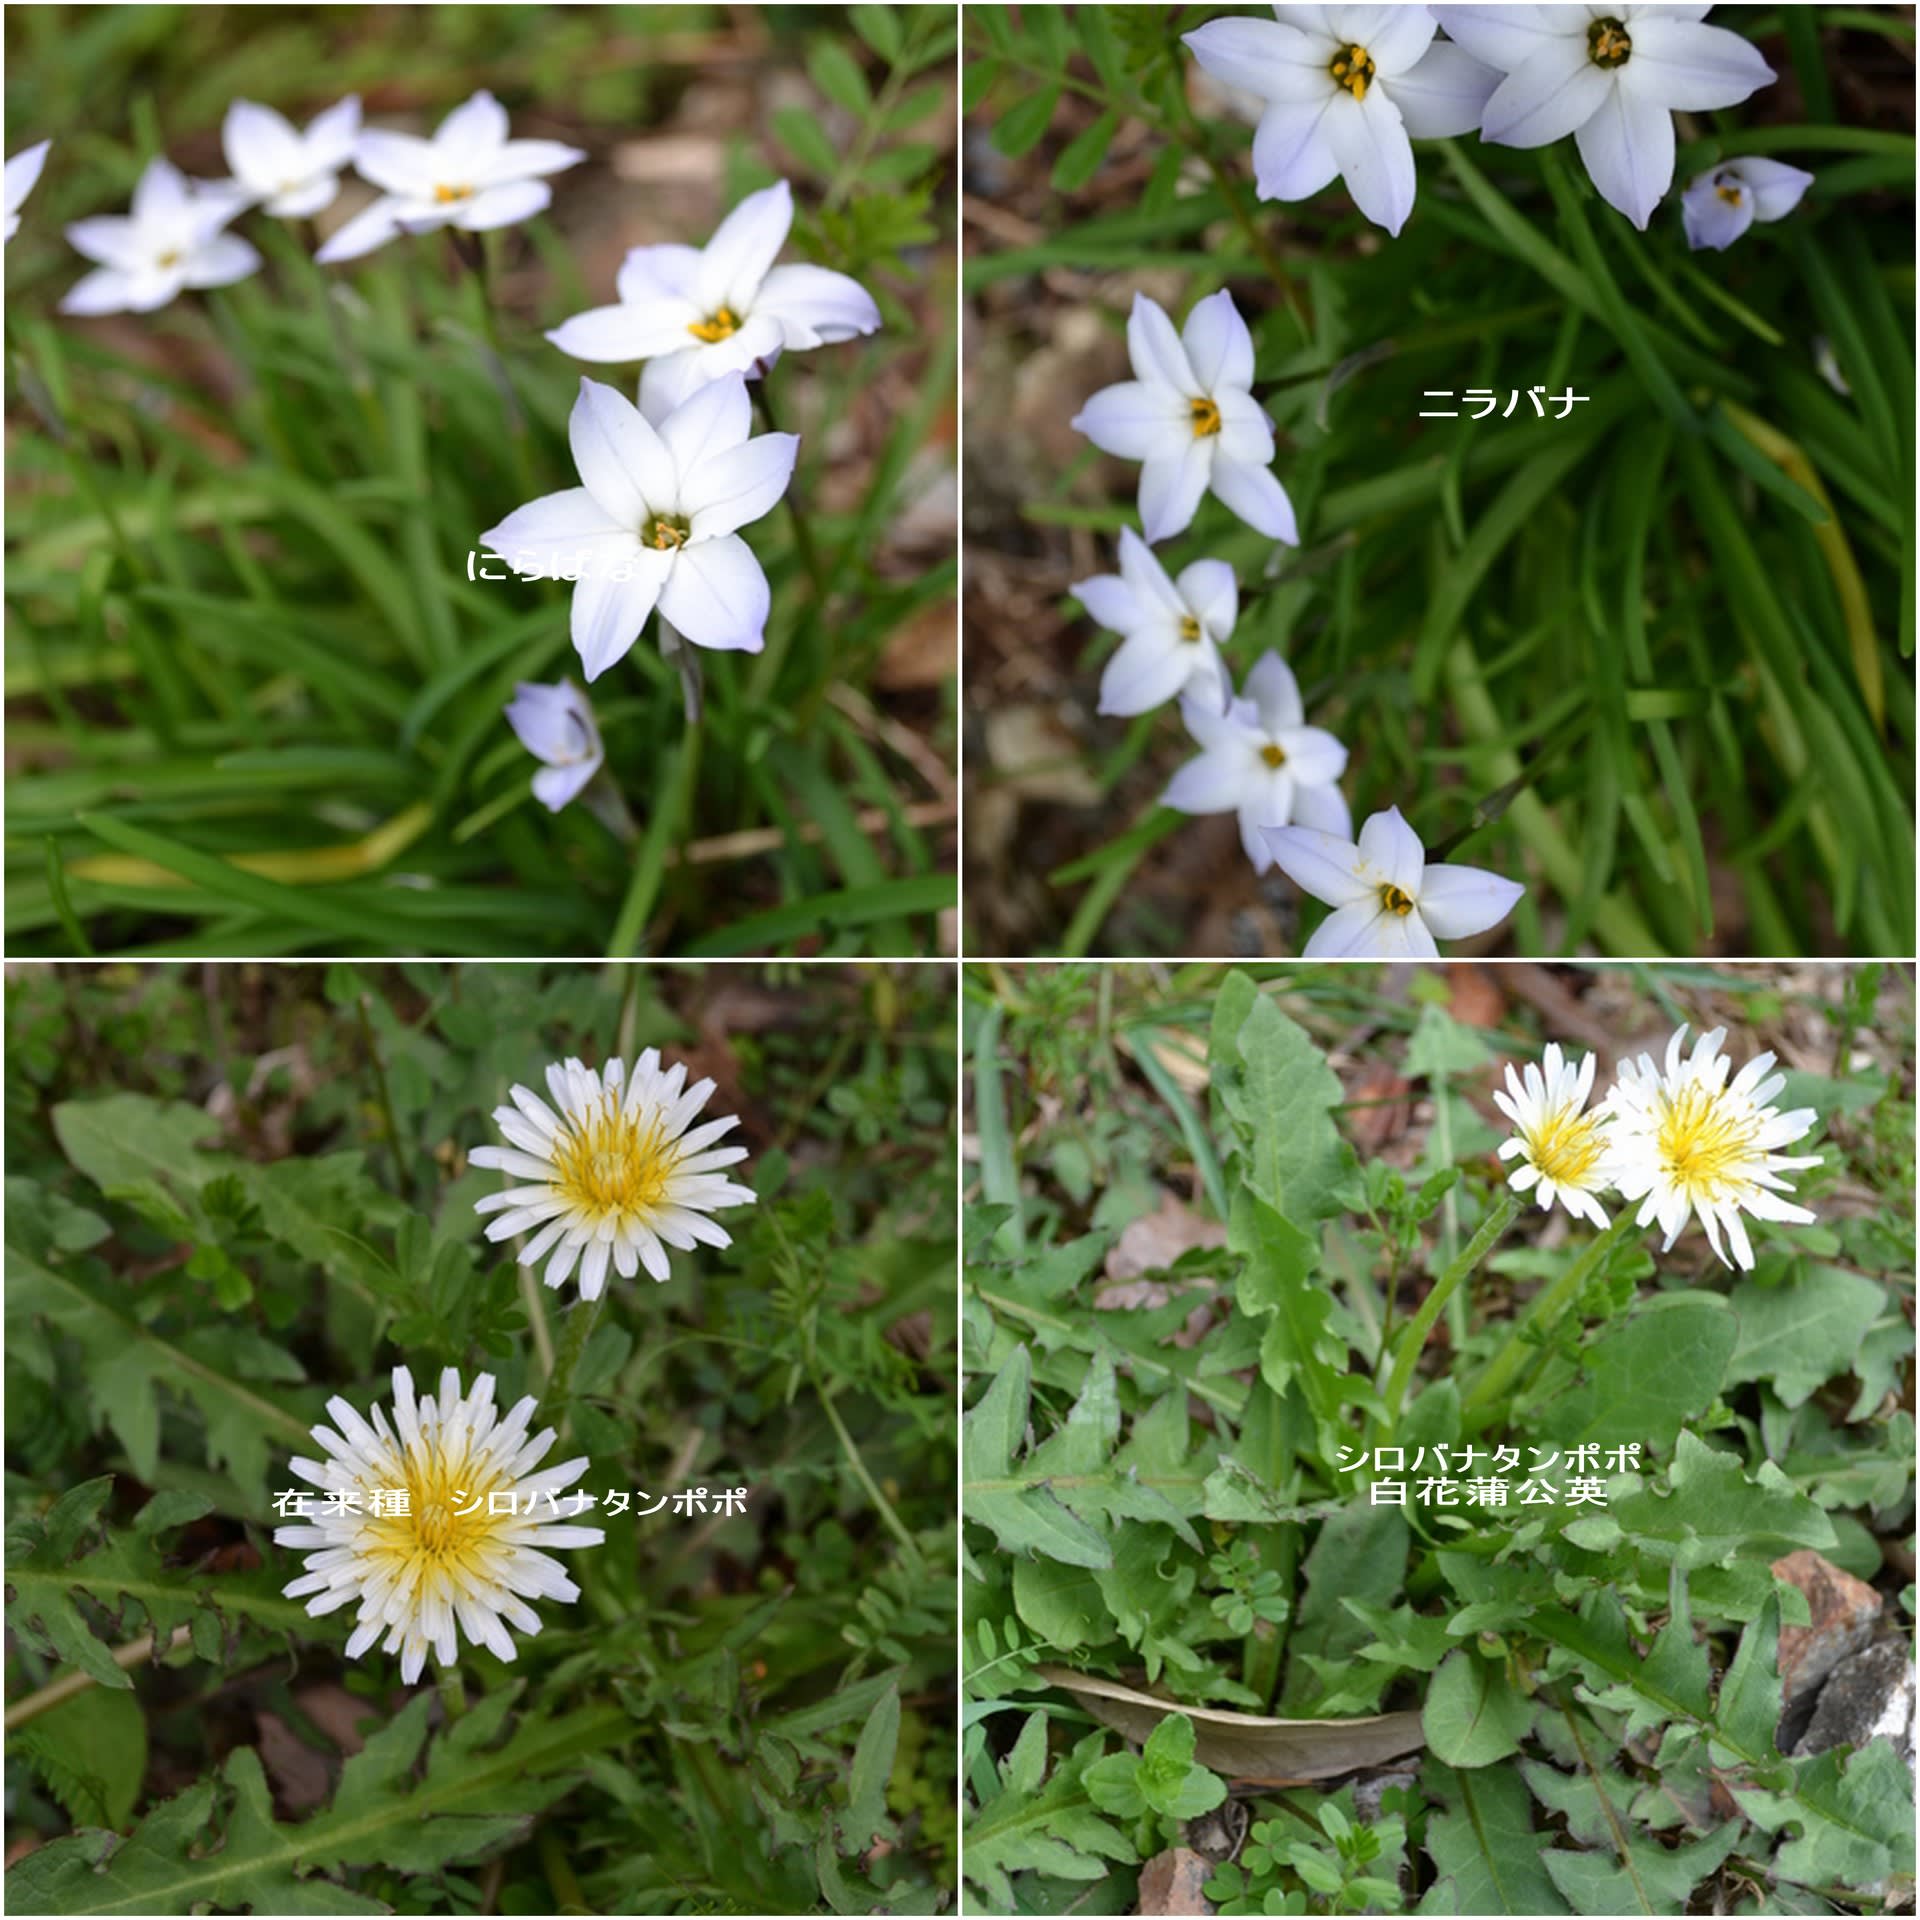 吾岡山に３月に咲く白い花 うーたんのフォト日記